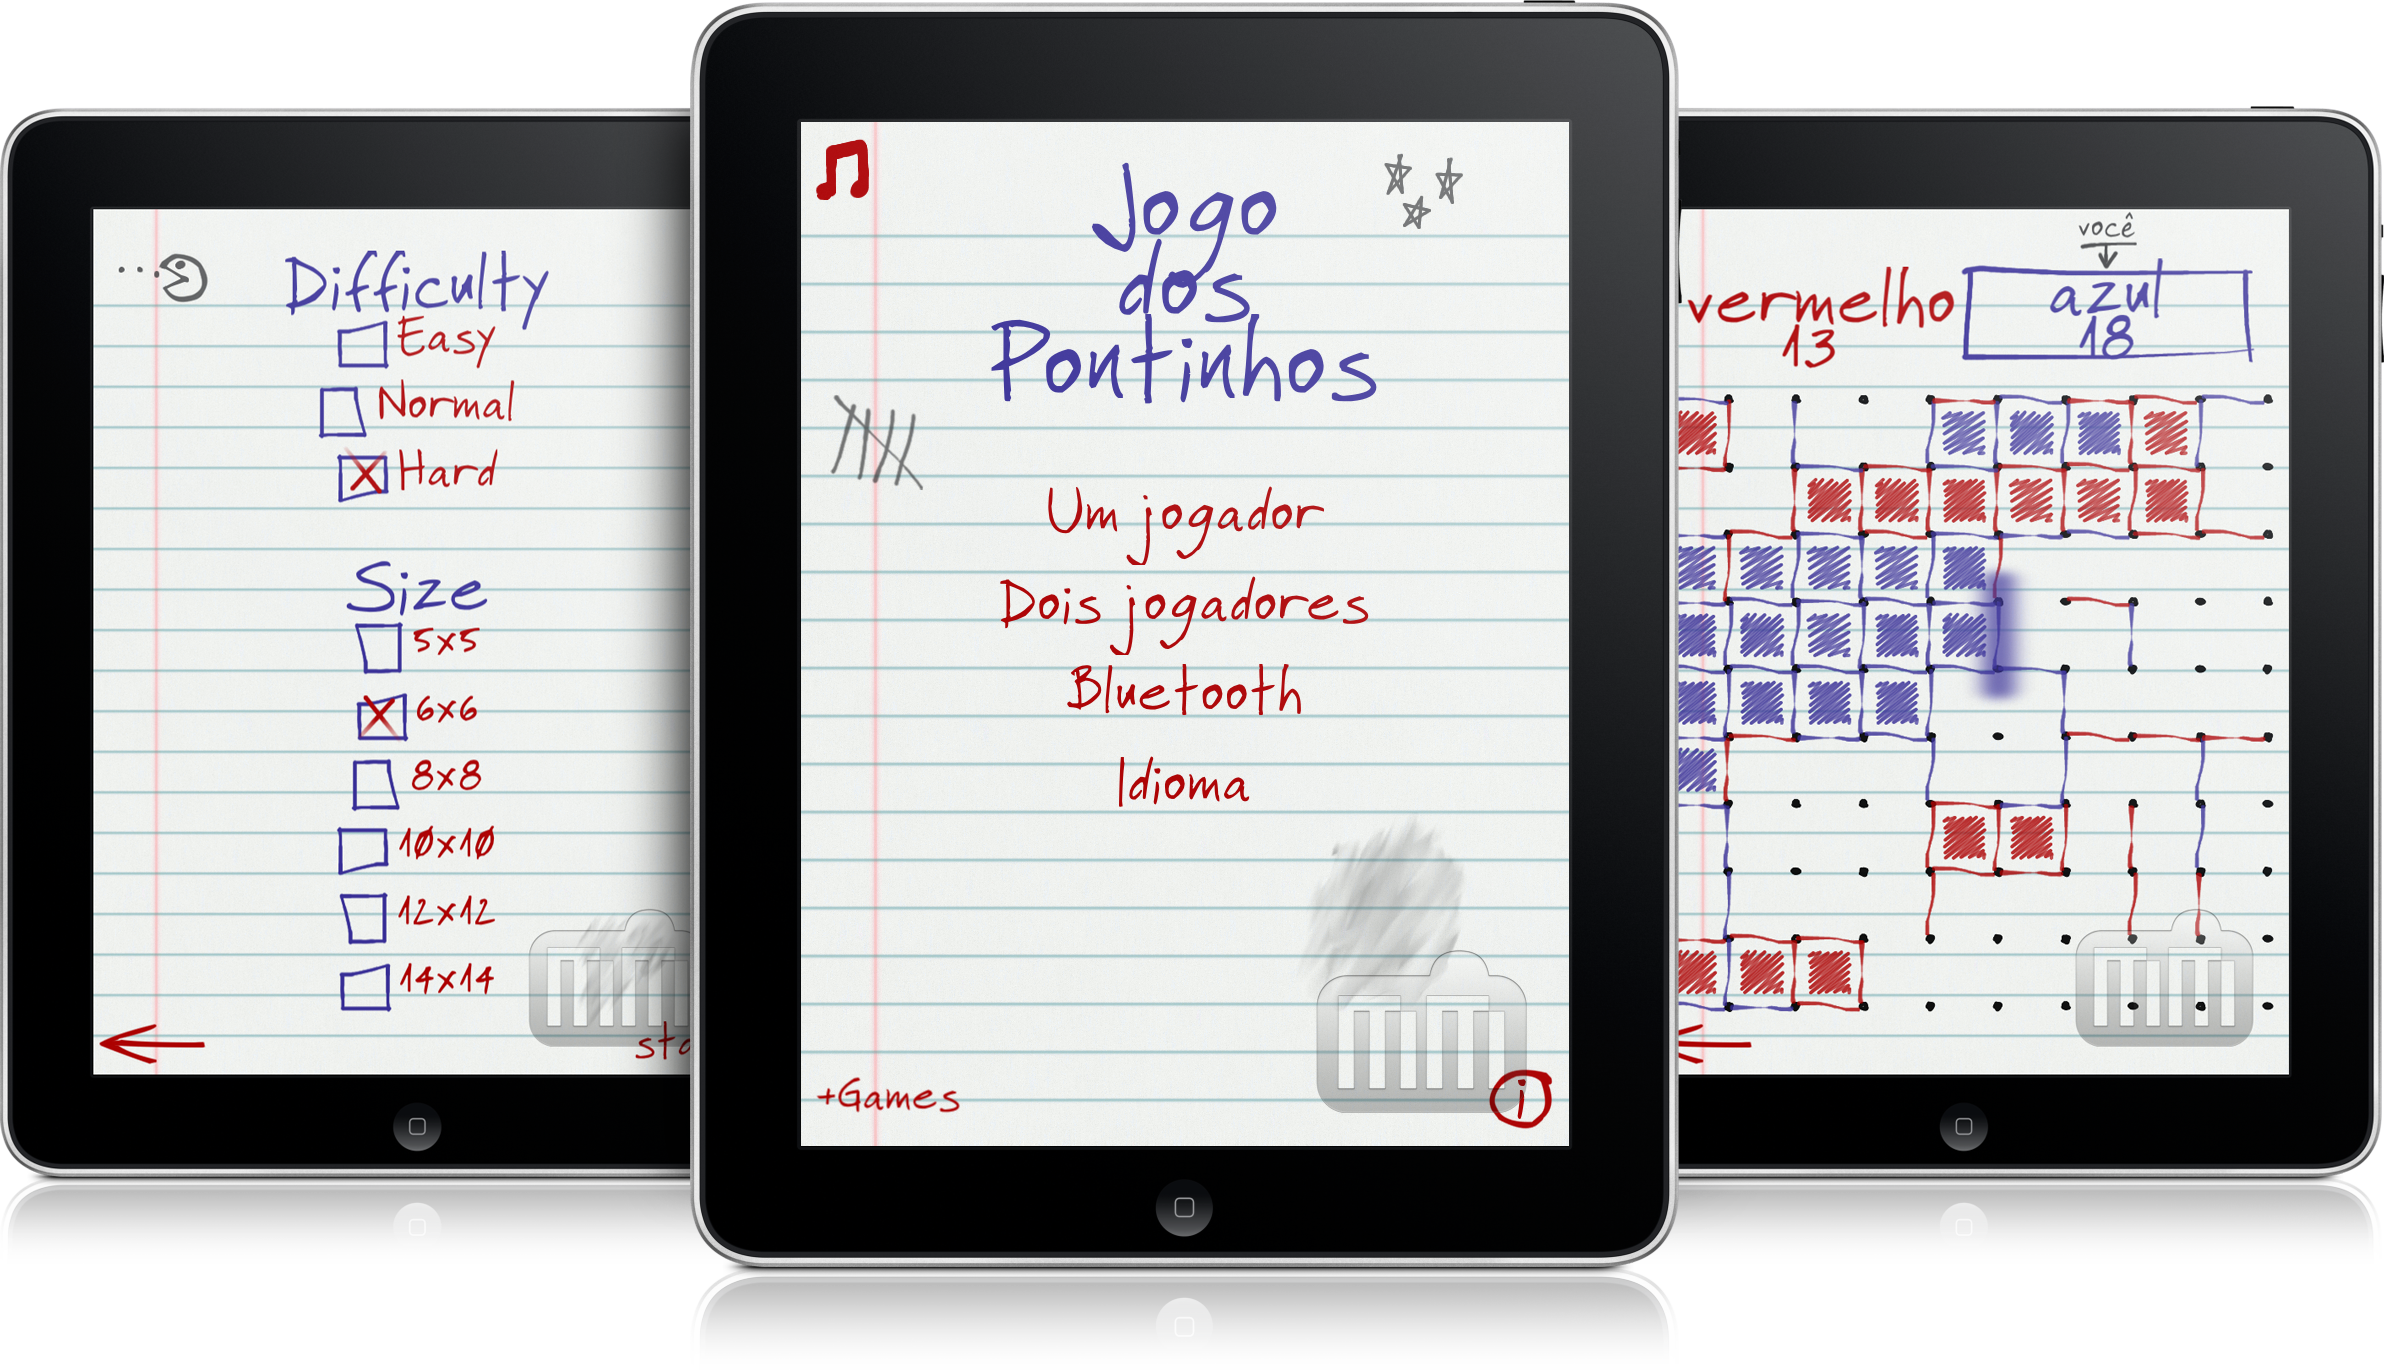 Desenvolvedor Saulo Souto lança Jogo dos Pontinhos HD para iPads -  MacMagazine